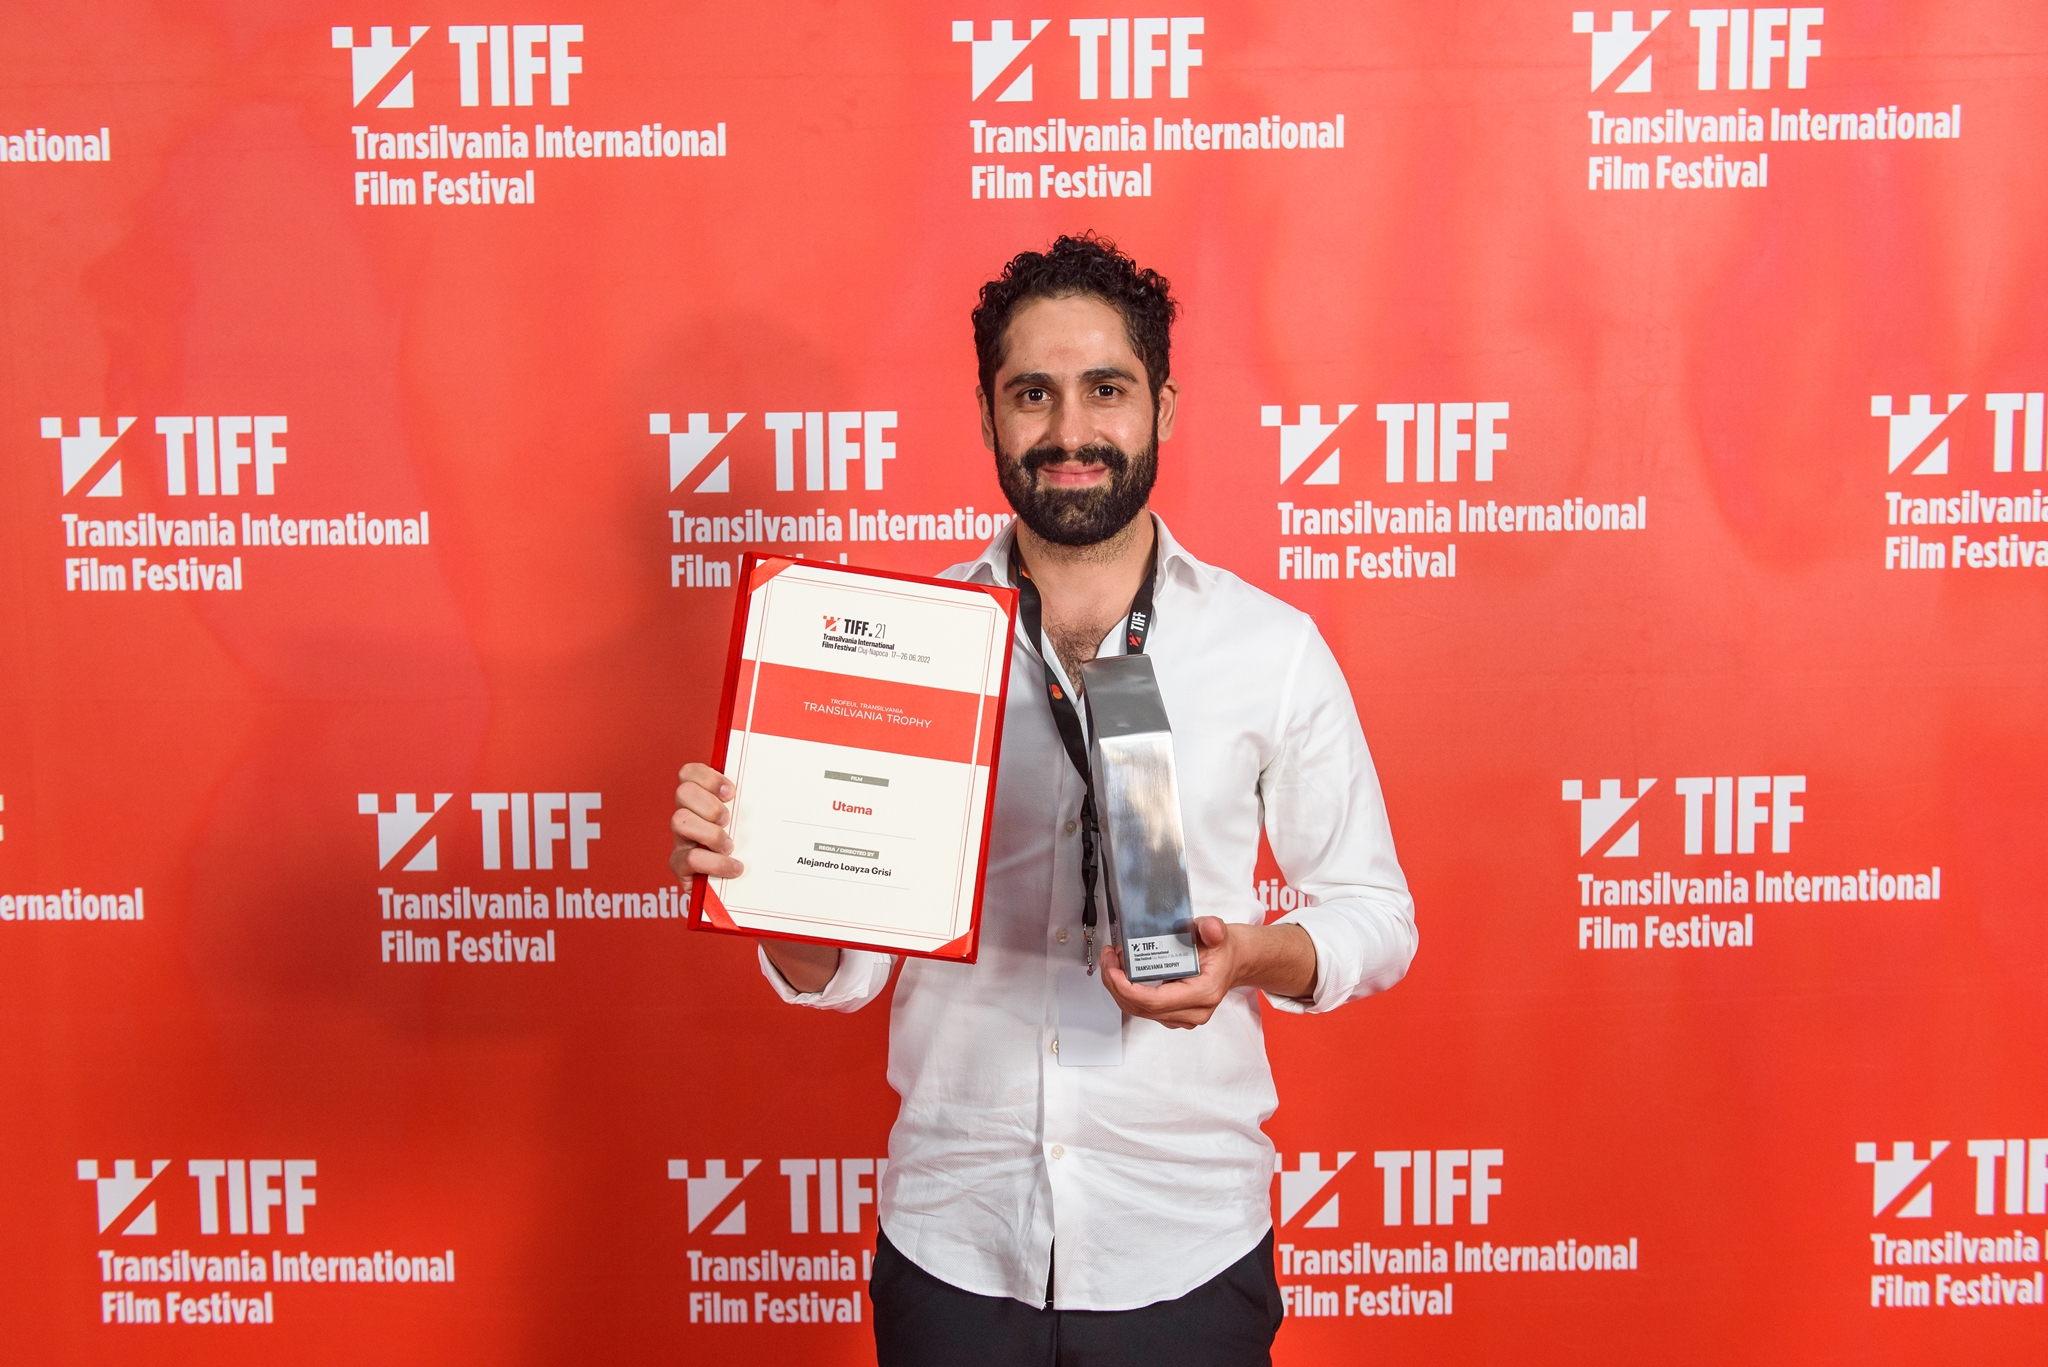 Filmul bolivian a câștigat Grand Prix la Festivalul Internațional de Film Transilvania – TIFF21